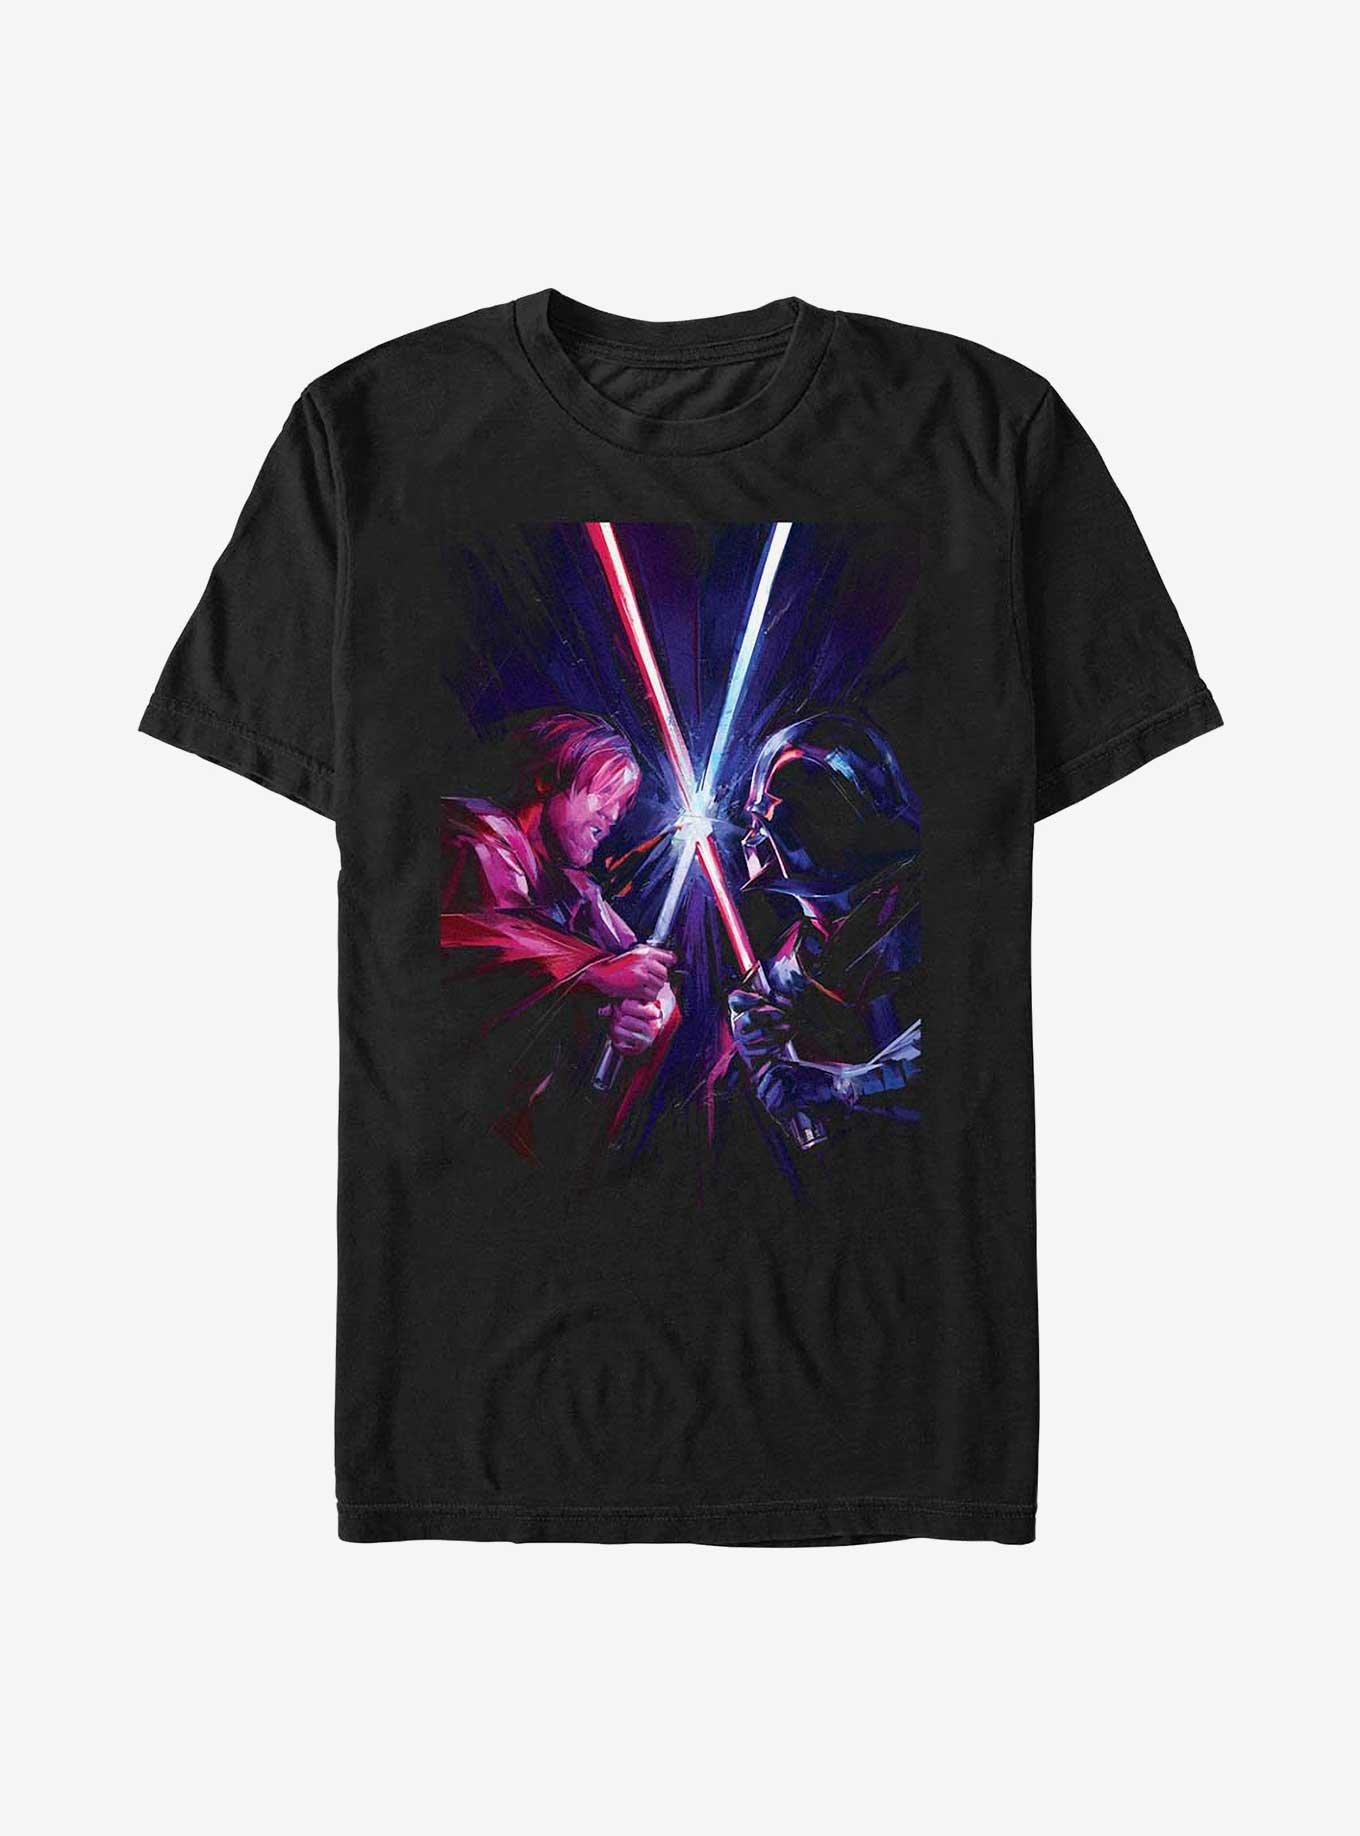 Star Wars Obi-Wan Kenobi Saber Clash T-Shirt, BLACK, hi-res